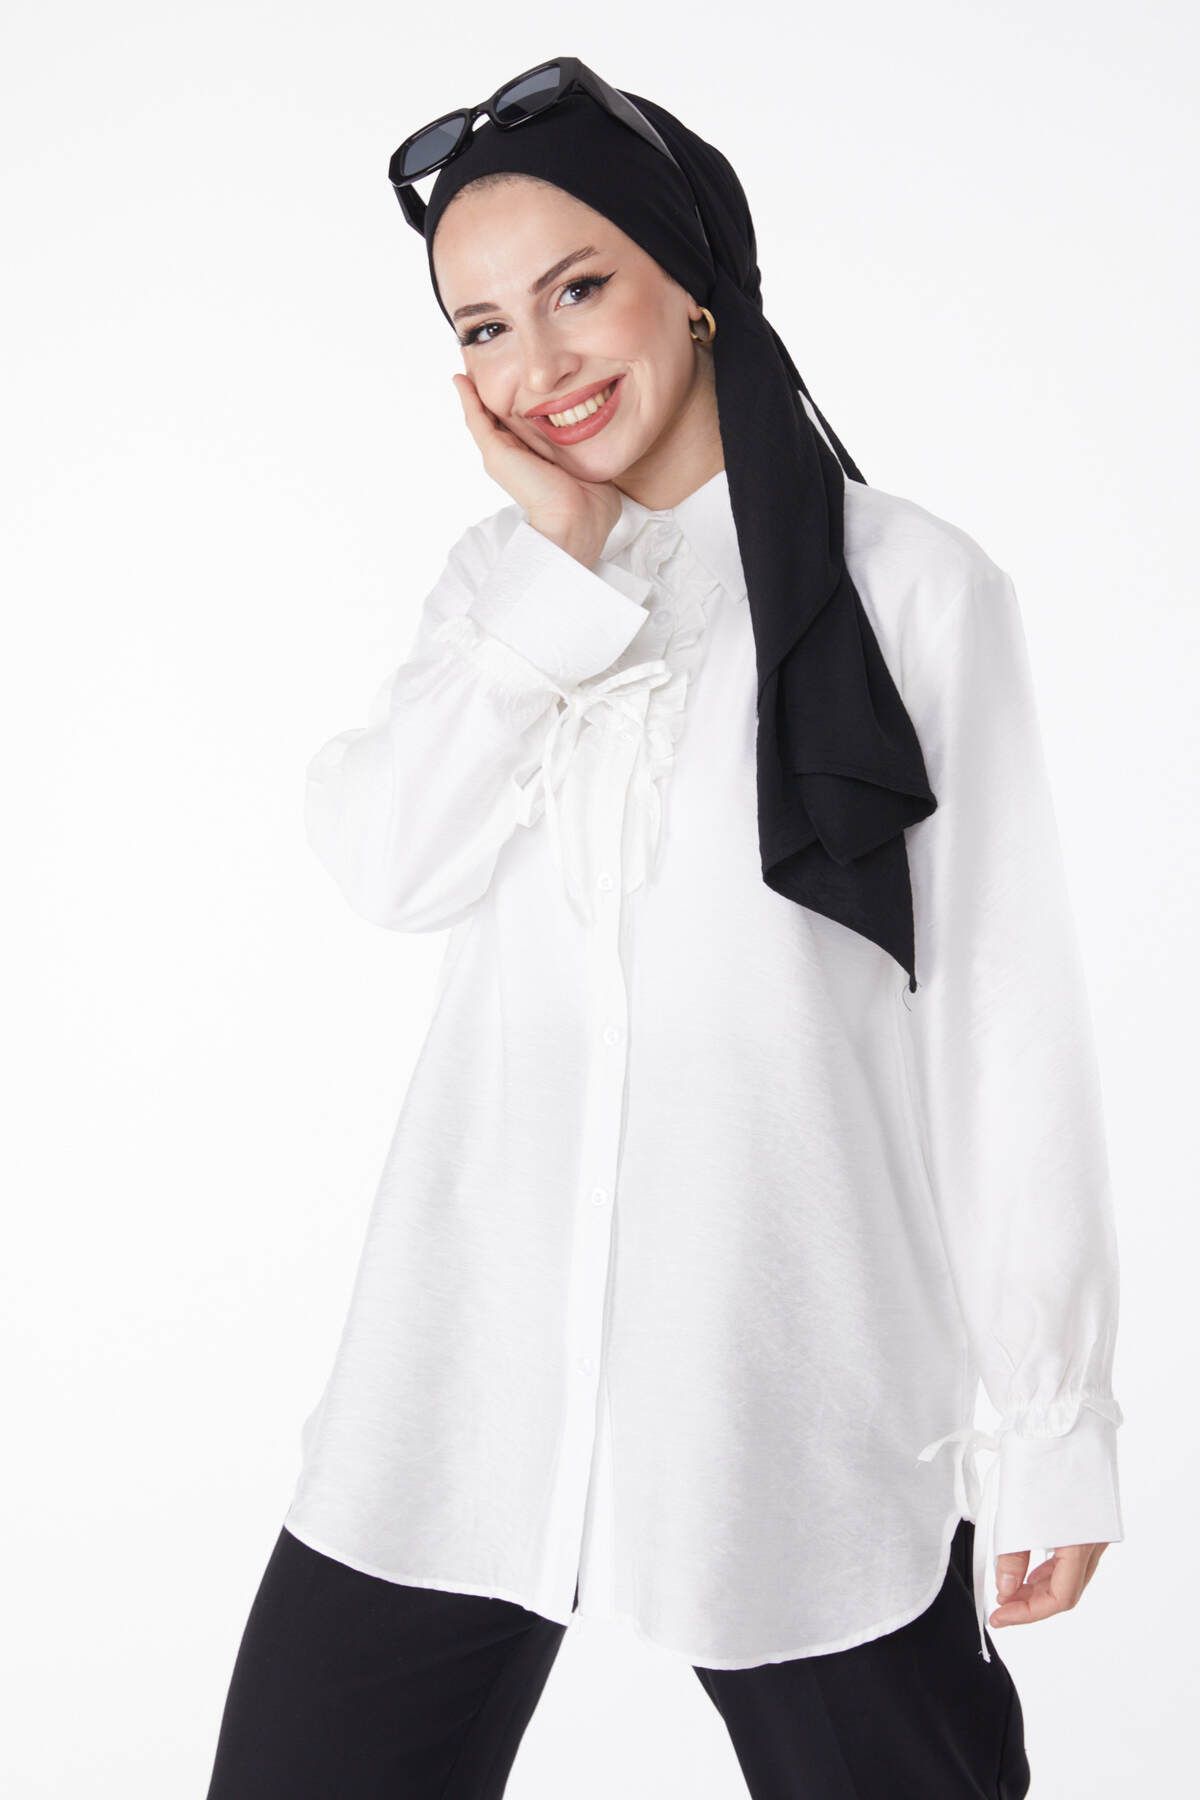 TOFİSA Düz Gömlek Yaka Kadın Beyaz Fırfırlı Gömlek - 25259